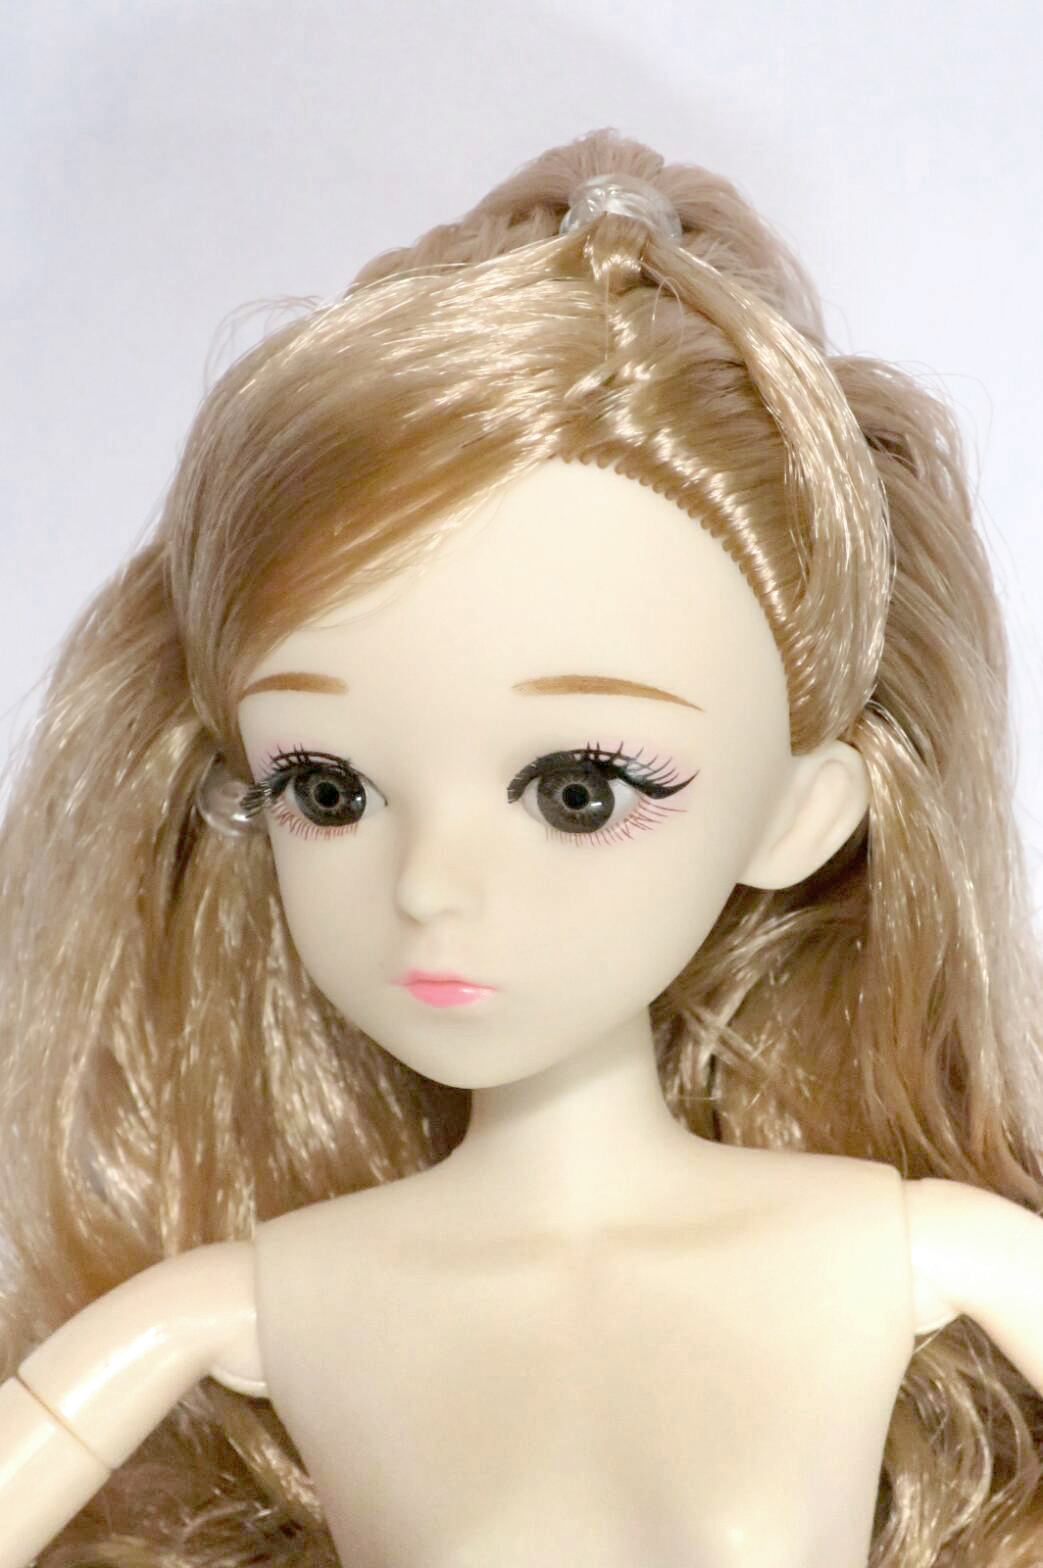 ตุ๊กตาบาร์บี้ ตุ๊กตาบาร์บี้ข้อต่อ 20 Joints ตุ๊กตาบาร์บี้หน้าญี่ปุ่น (แถมฟรี ชุดเสื้อผ้า 1 ชุด และ รองเท้าส้นสูง) ตาแก้ว 3D Eyes มีขนตา White Body